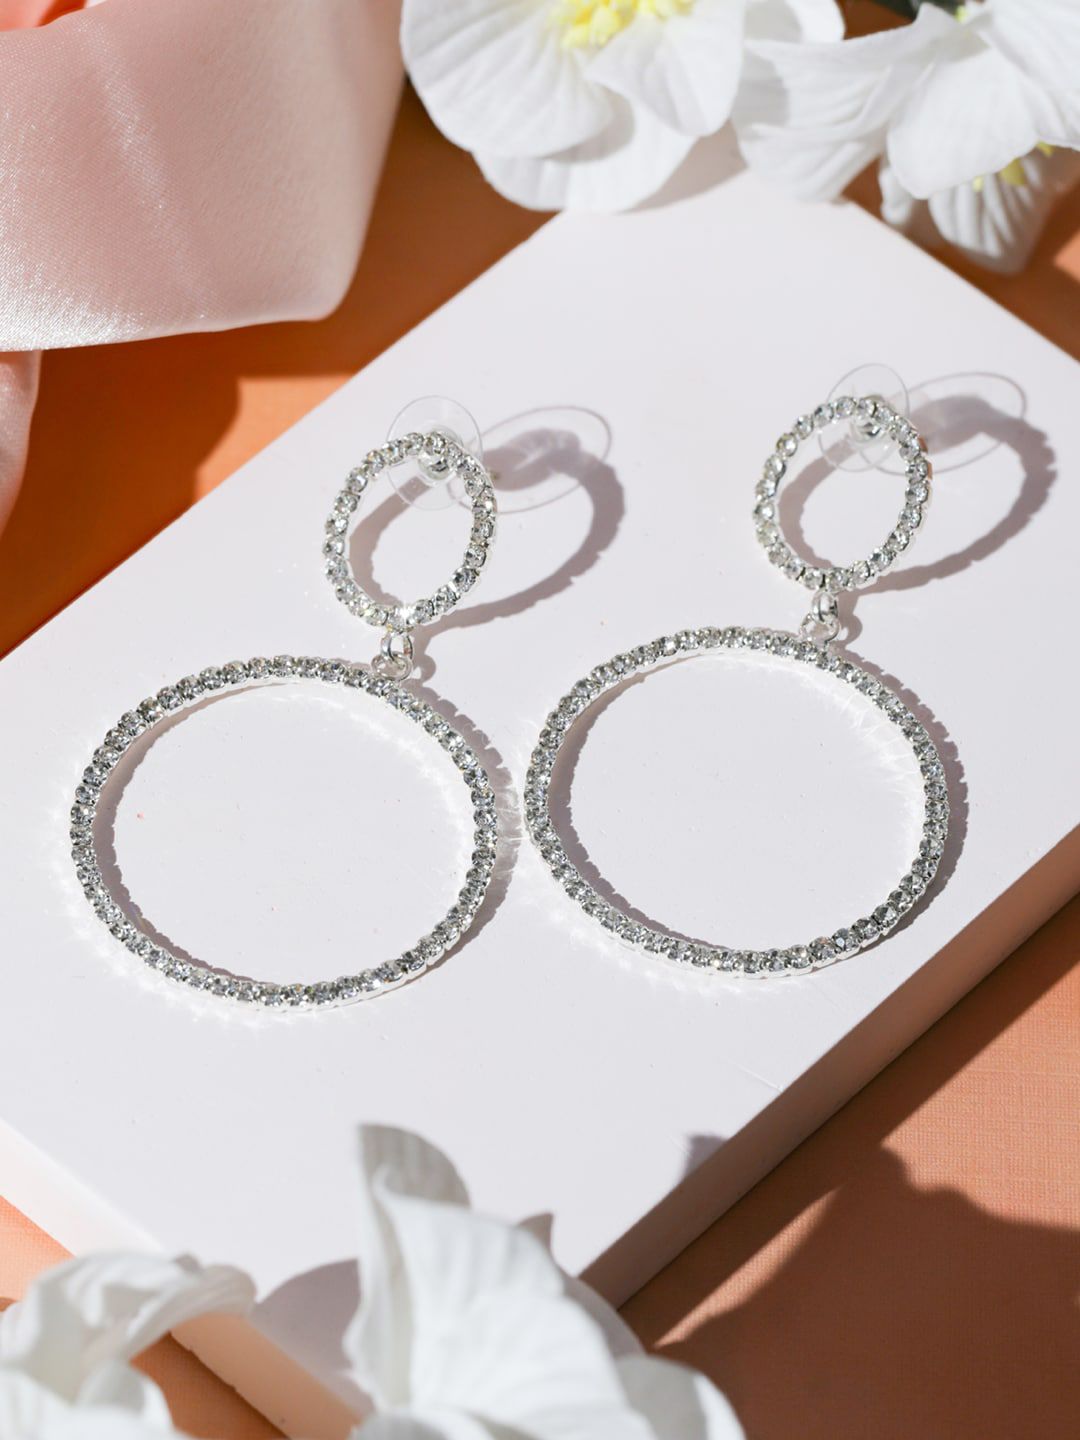 Priyaasi Silver-Toned American Diamond Drop Earrings Price in India